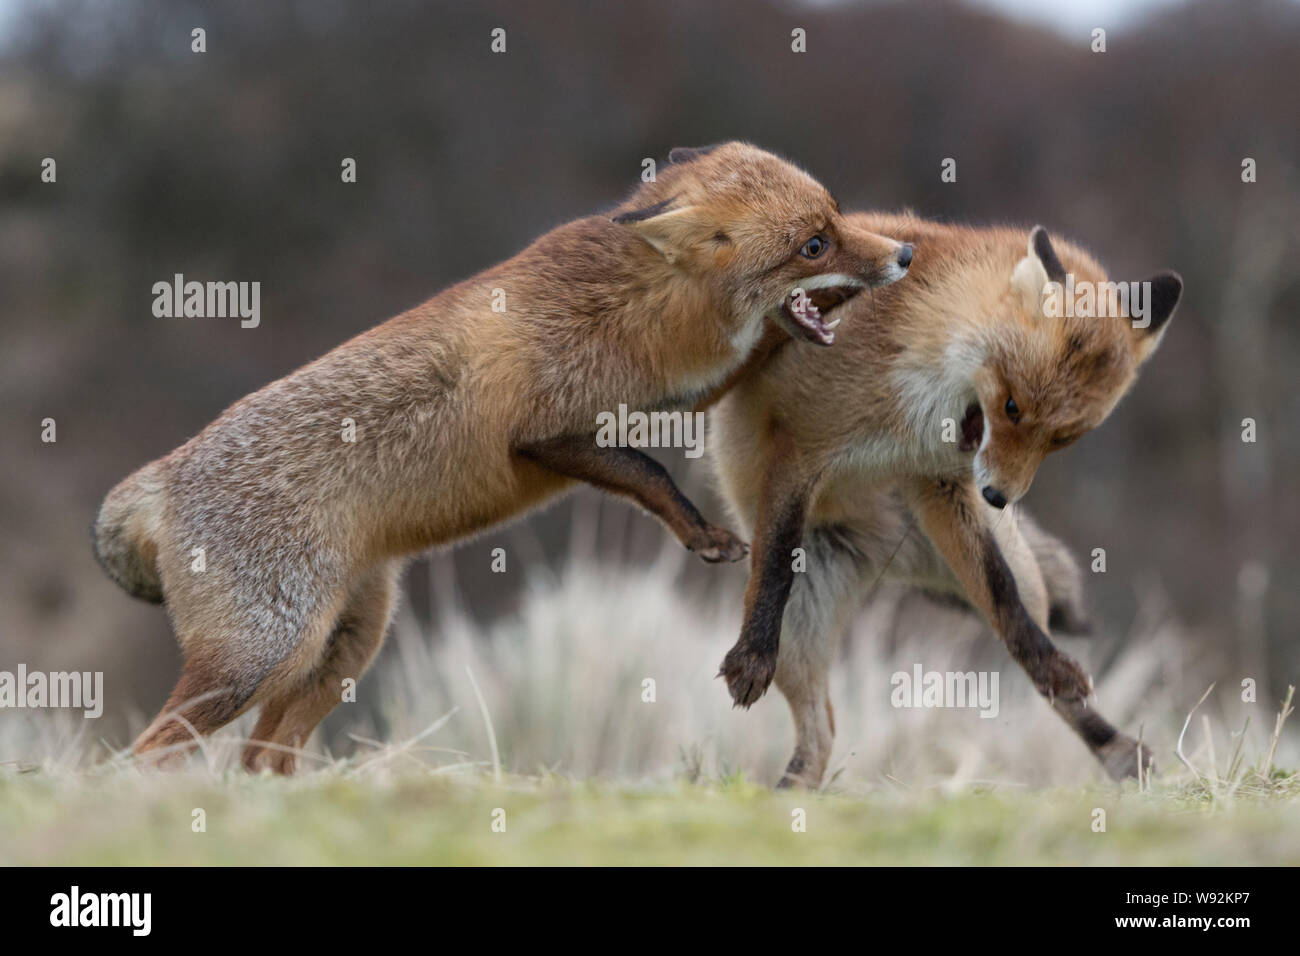 Rote Füchse/Rotfuechse (Vulpes vulpes), zwei Erwachsene in aggressiven kämpfen, kämpfen, Beißen, territoriale Verhalten, hirschbrunft, Tierwelt, Stockfoto